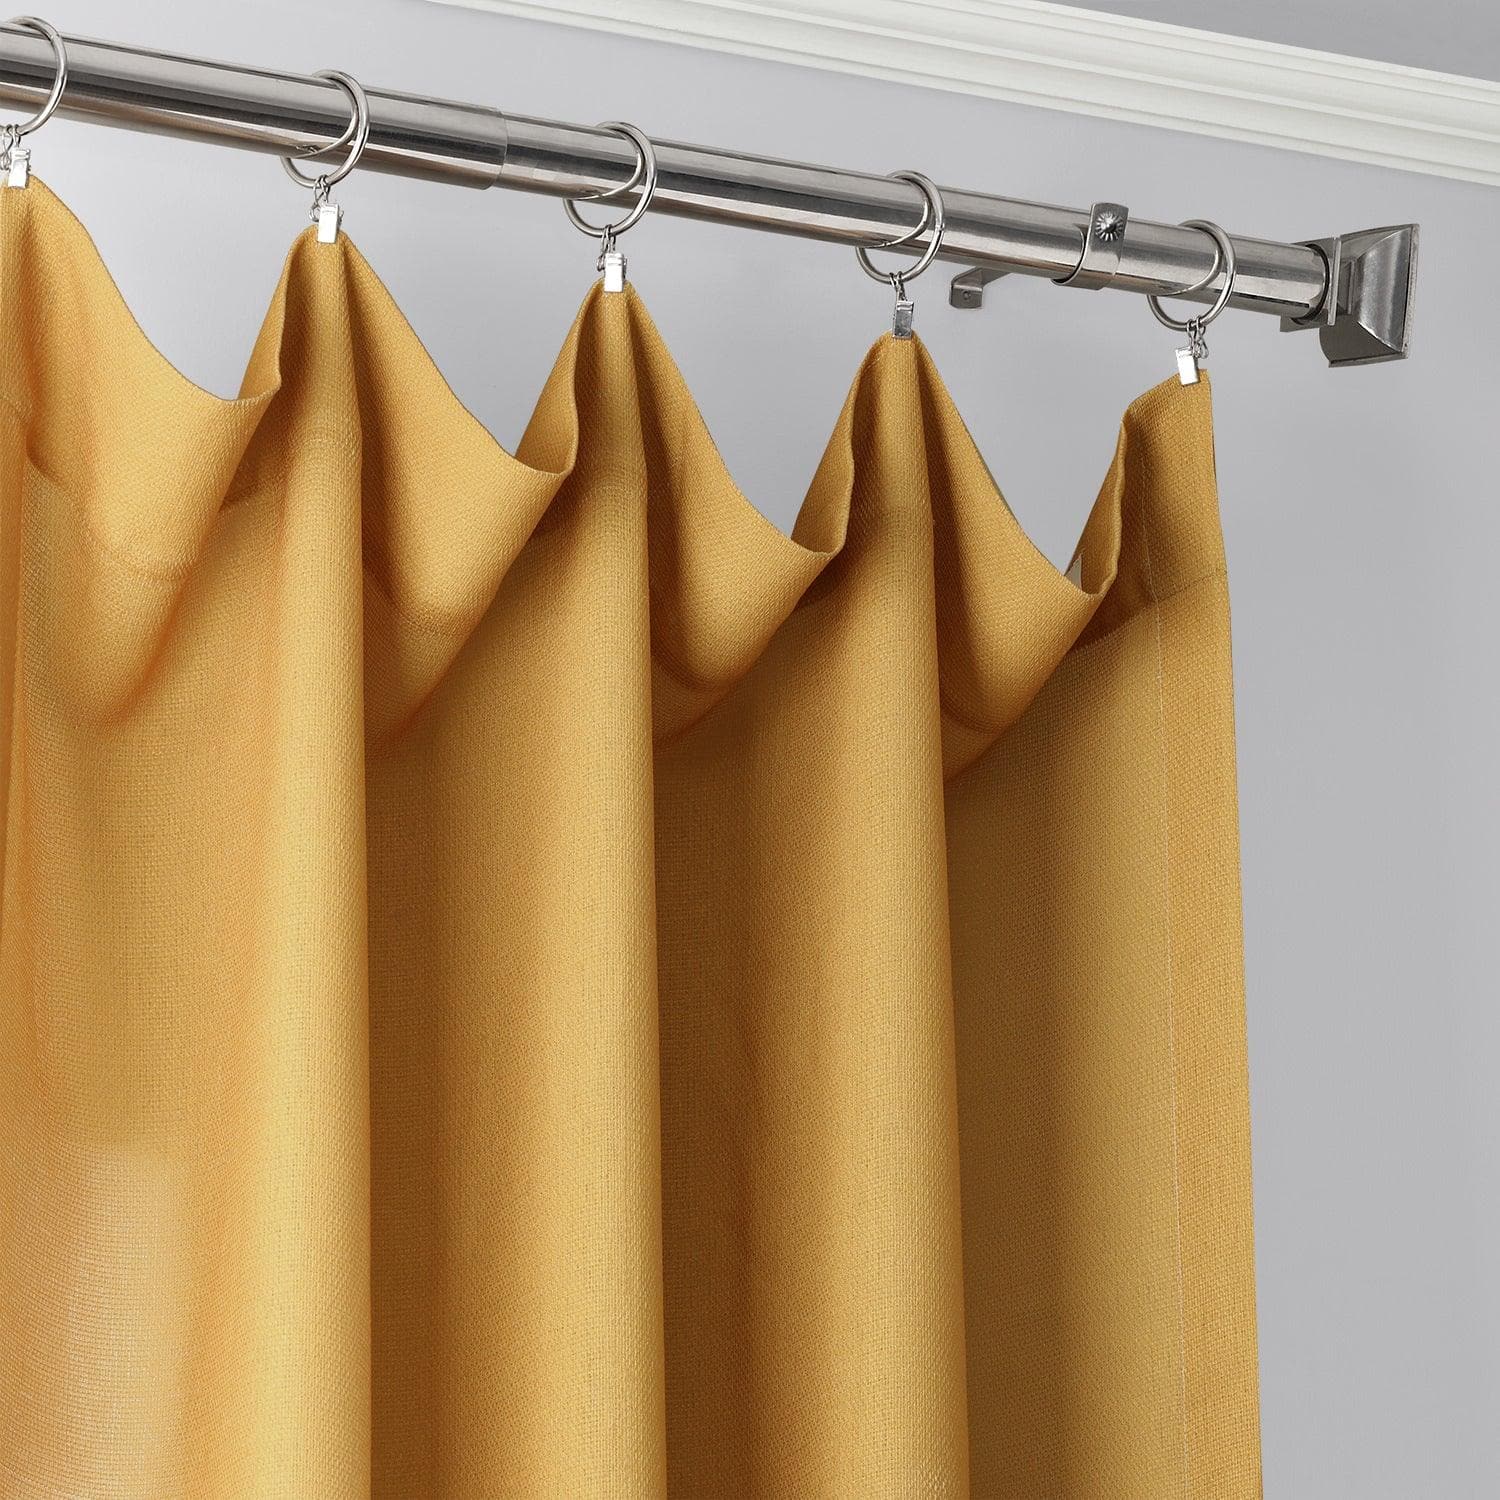 Gold Ombre Faux Linen Curtain